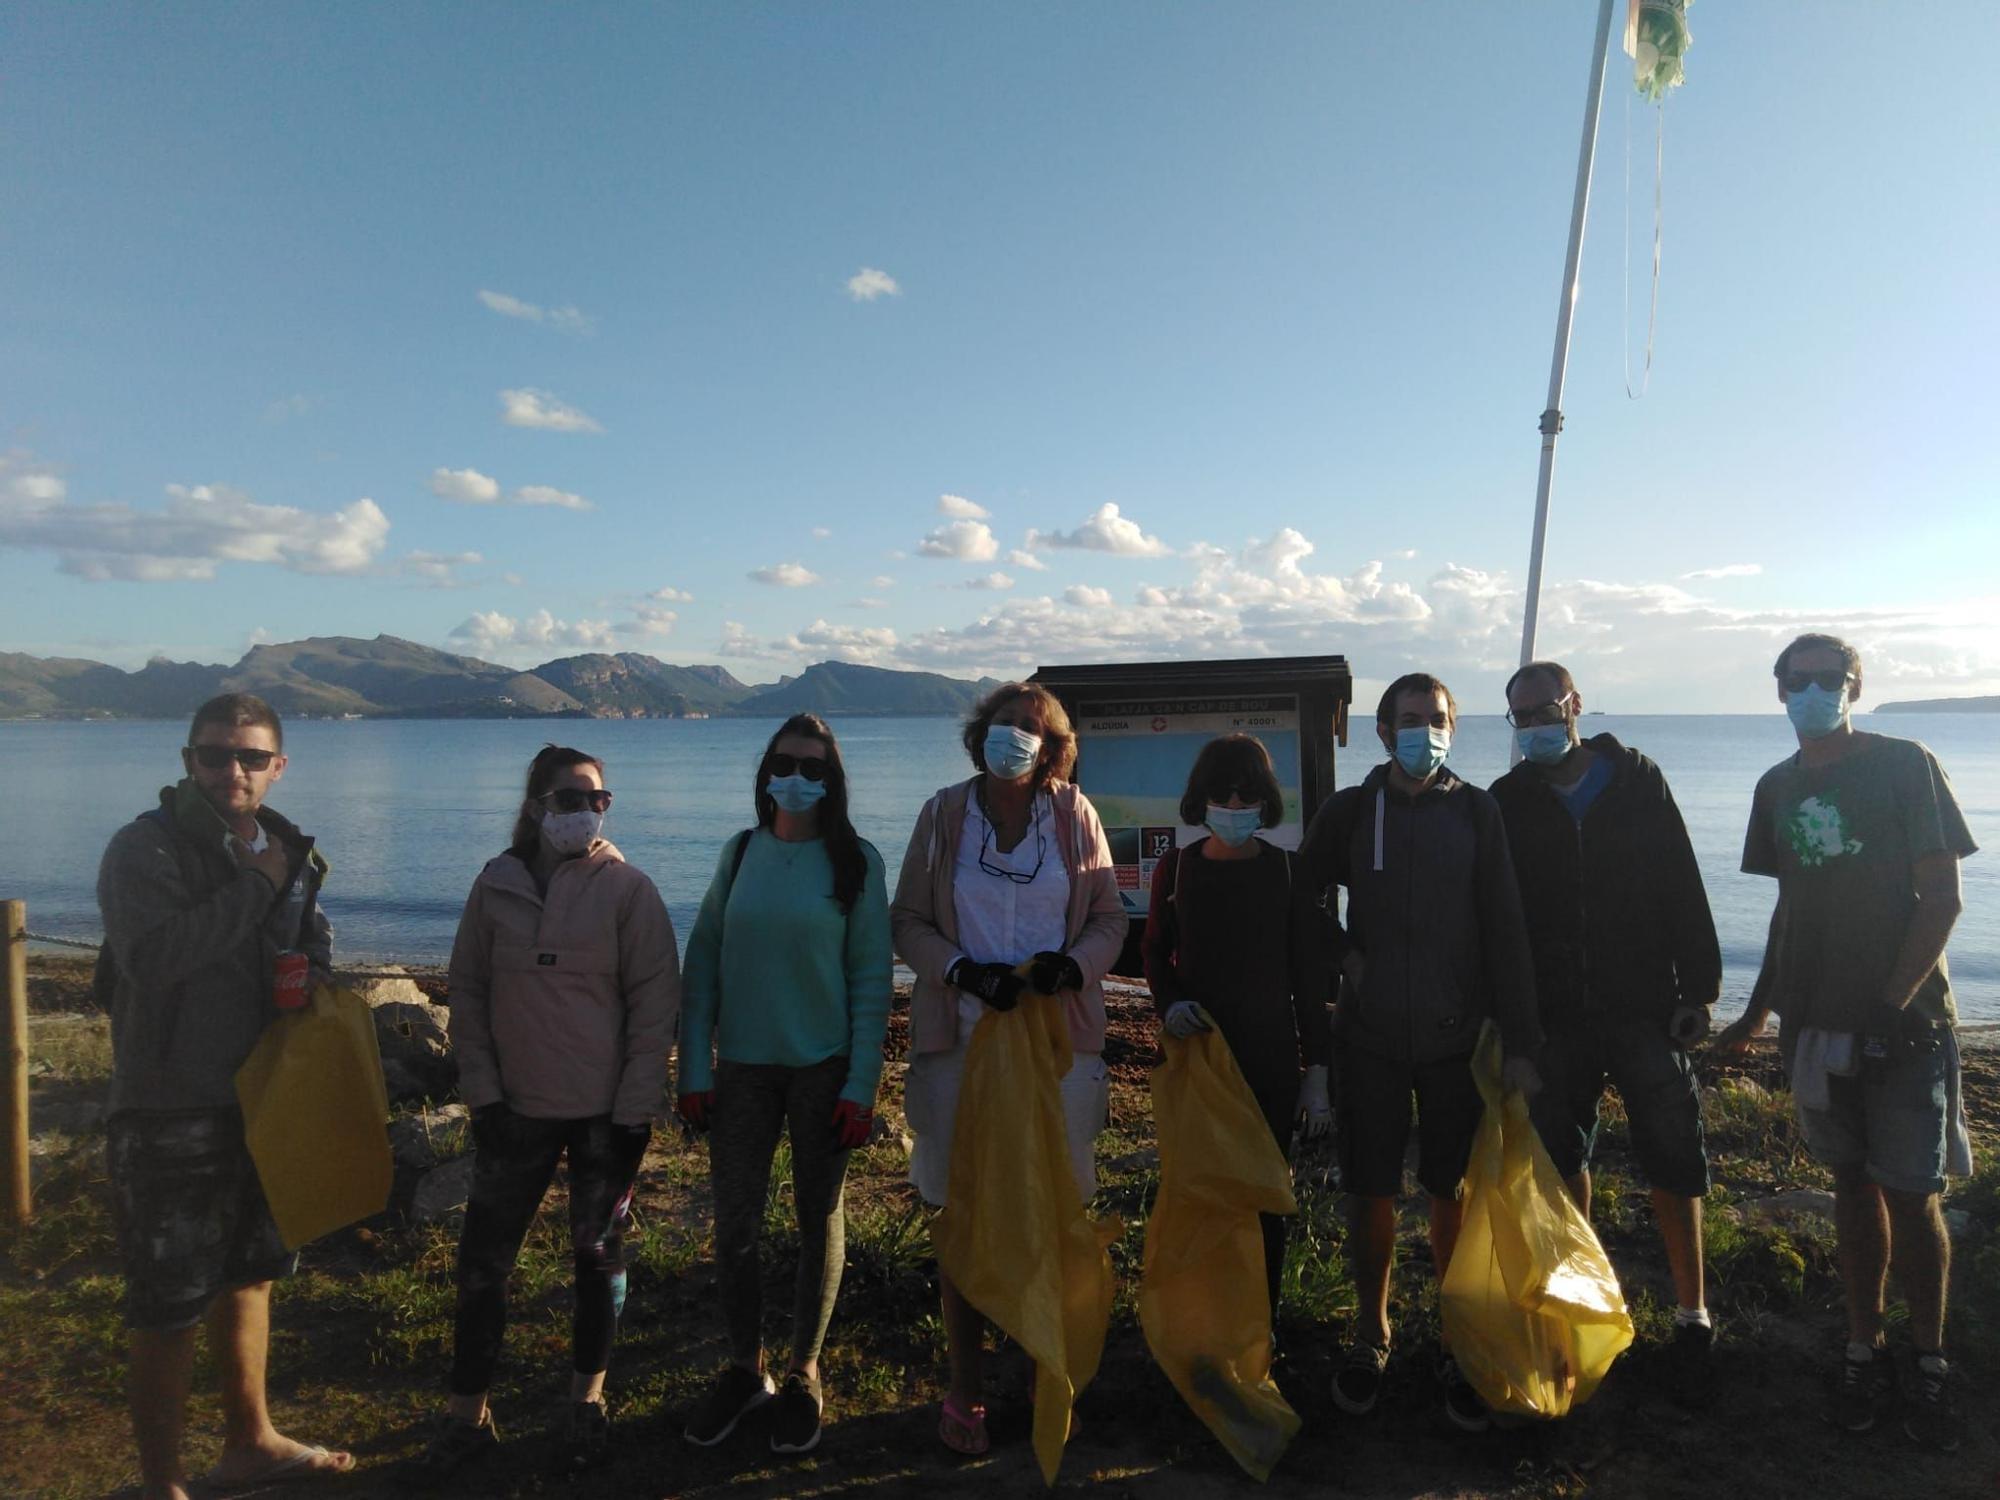 Una veintena de voluntarios reúnen 15 bolsas de basuras del arenal. Es una iniciativa particular de ciudadanos concienciados en la necesidad de mantener las playas limpias